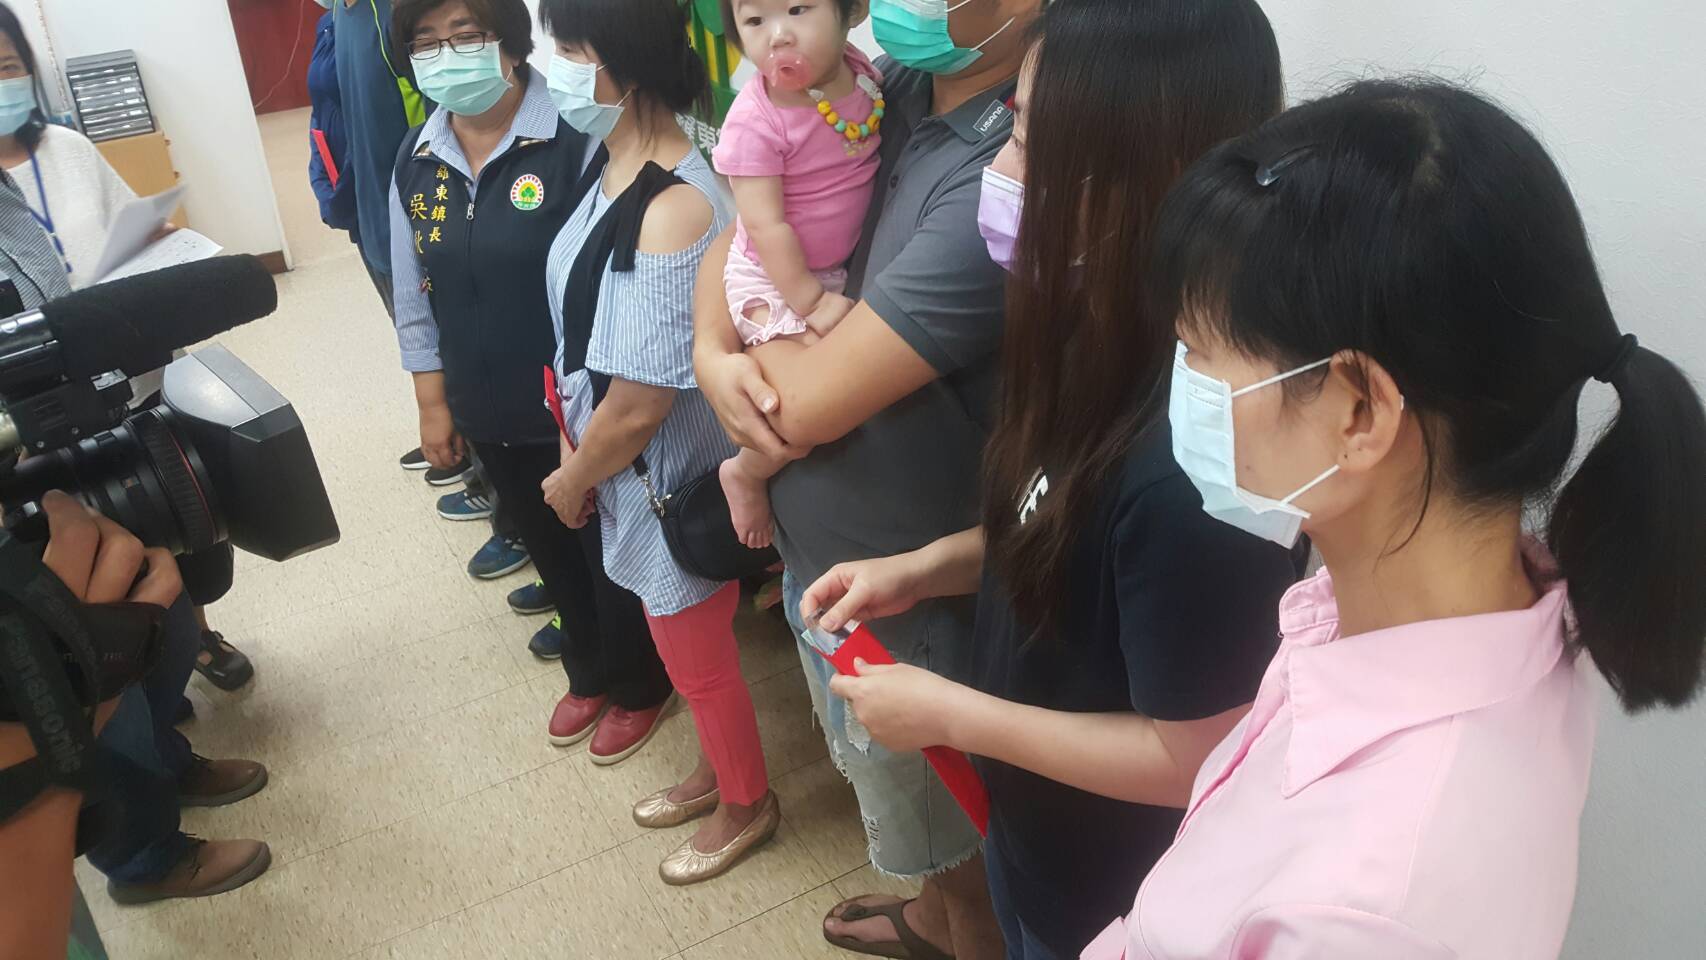 羅東鎮核發疫情紓困救助 現金受領者有人當場感動飲泣